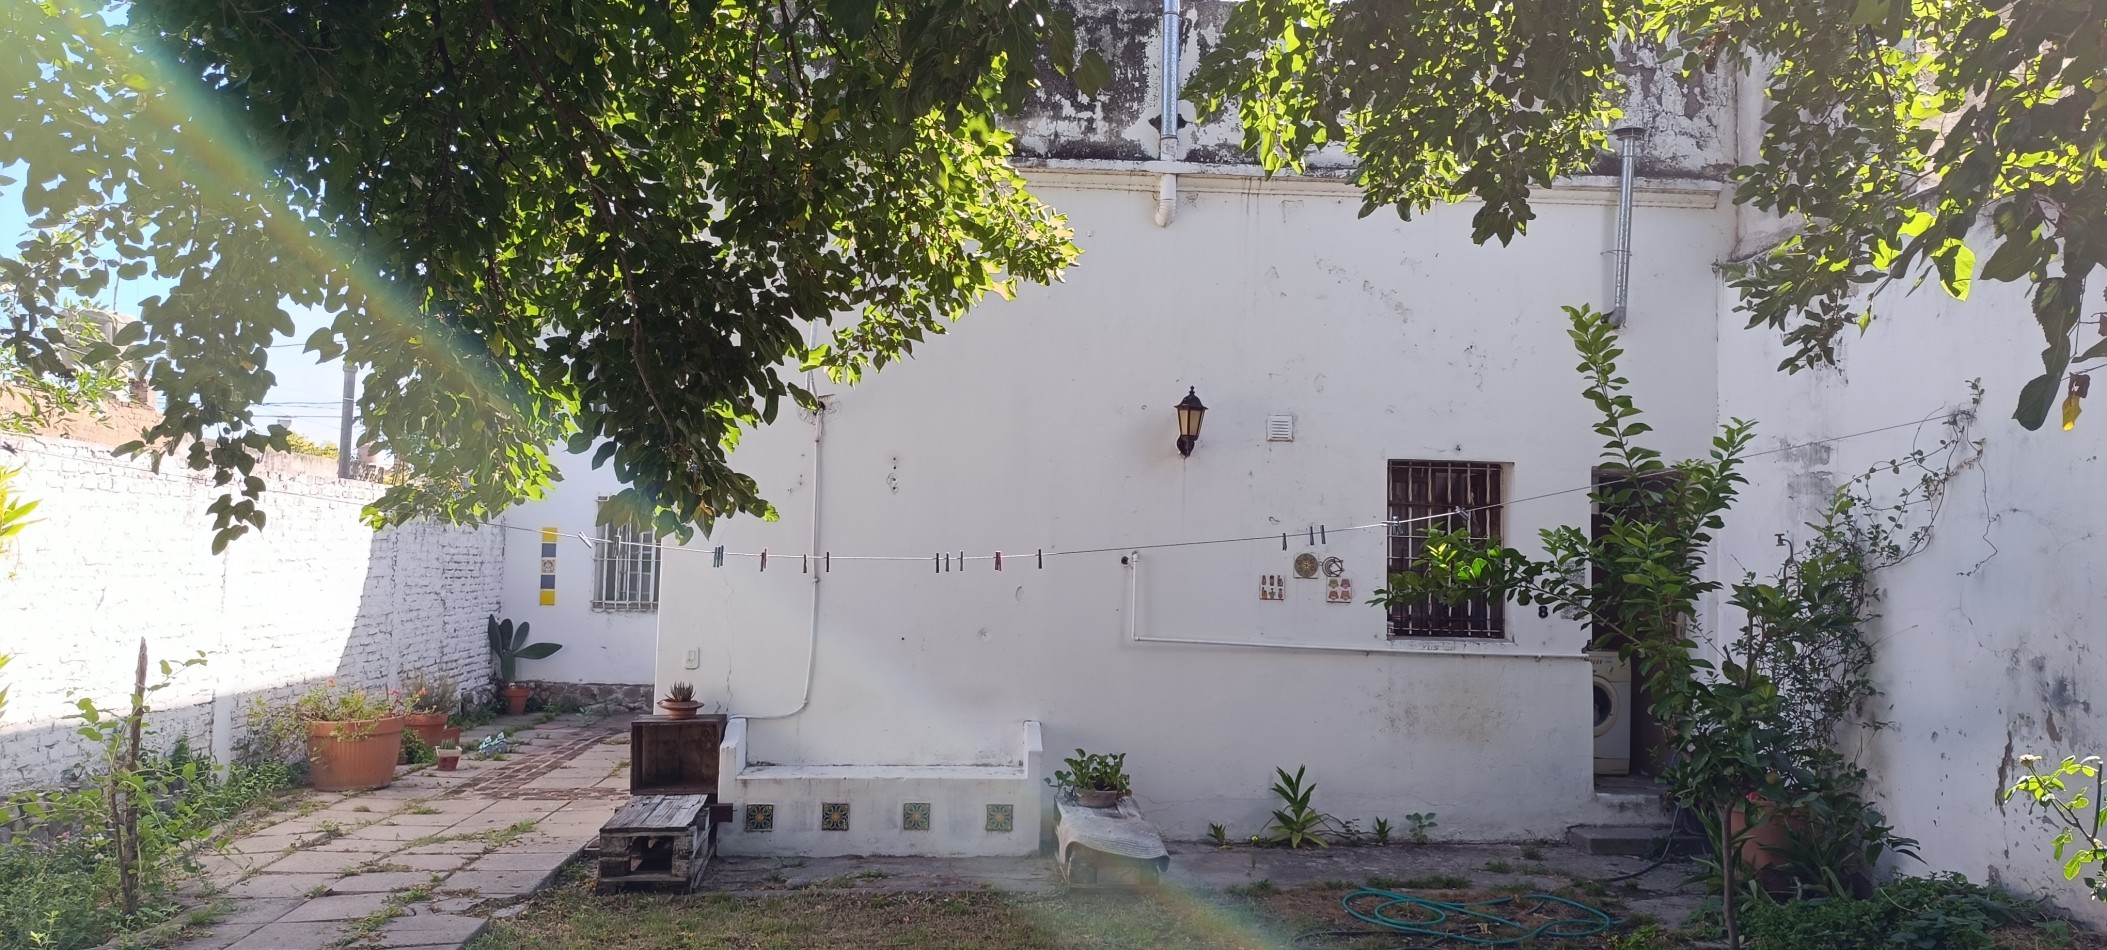 VENTA Casa Barrio Providencia, 3 dormitorios 310m2 de terreno 240 cubiertos, posobilidad en altura zona D